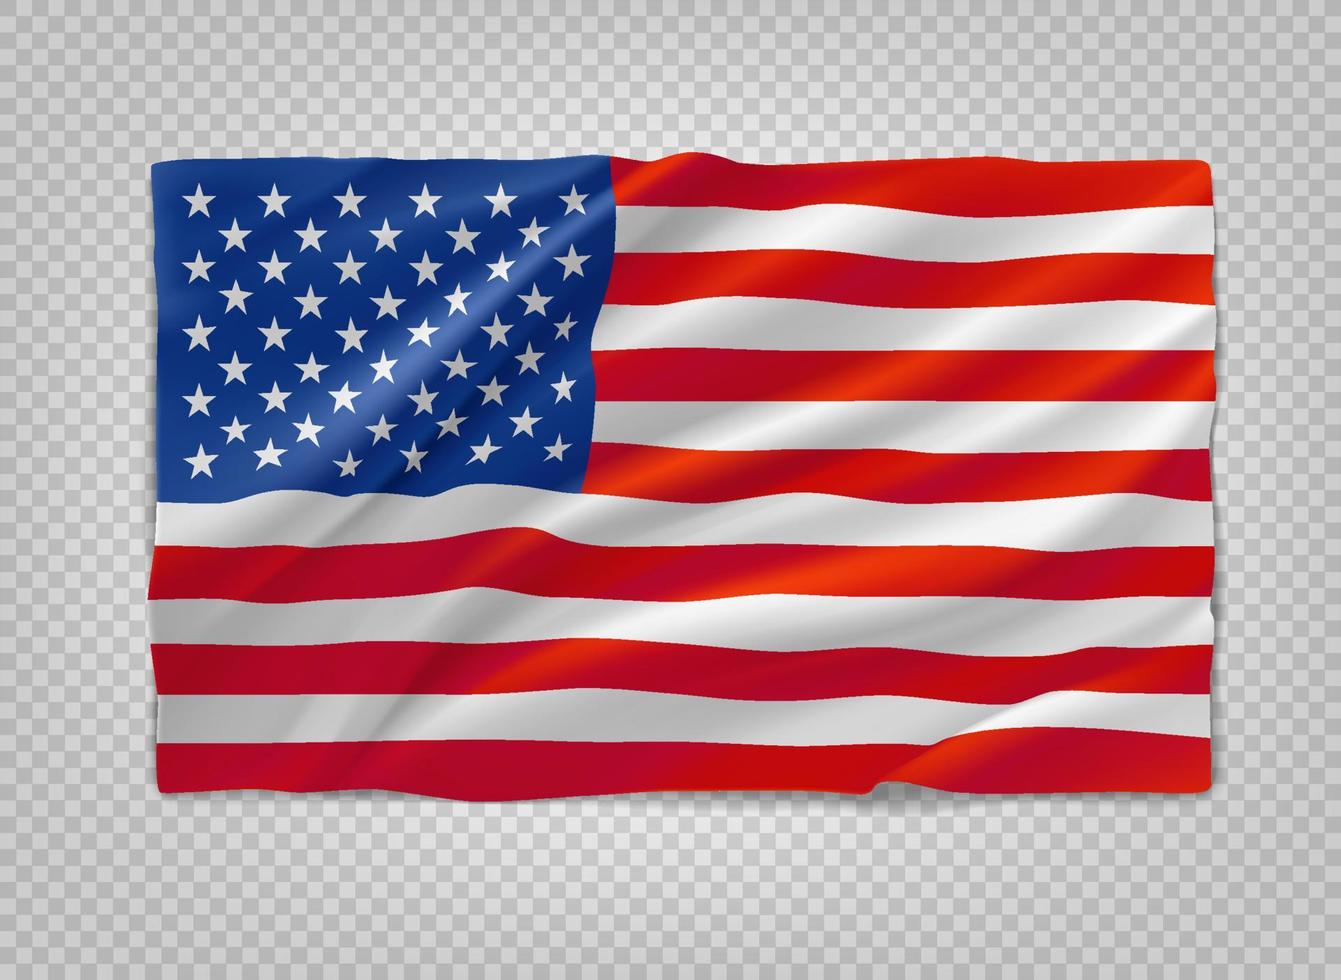 bandiera degli stati uniti d'america. oggetto vettoriale 3d isolato su sfondo trasparente